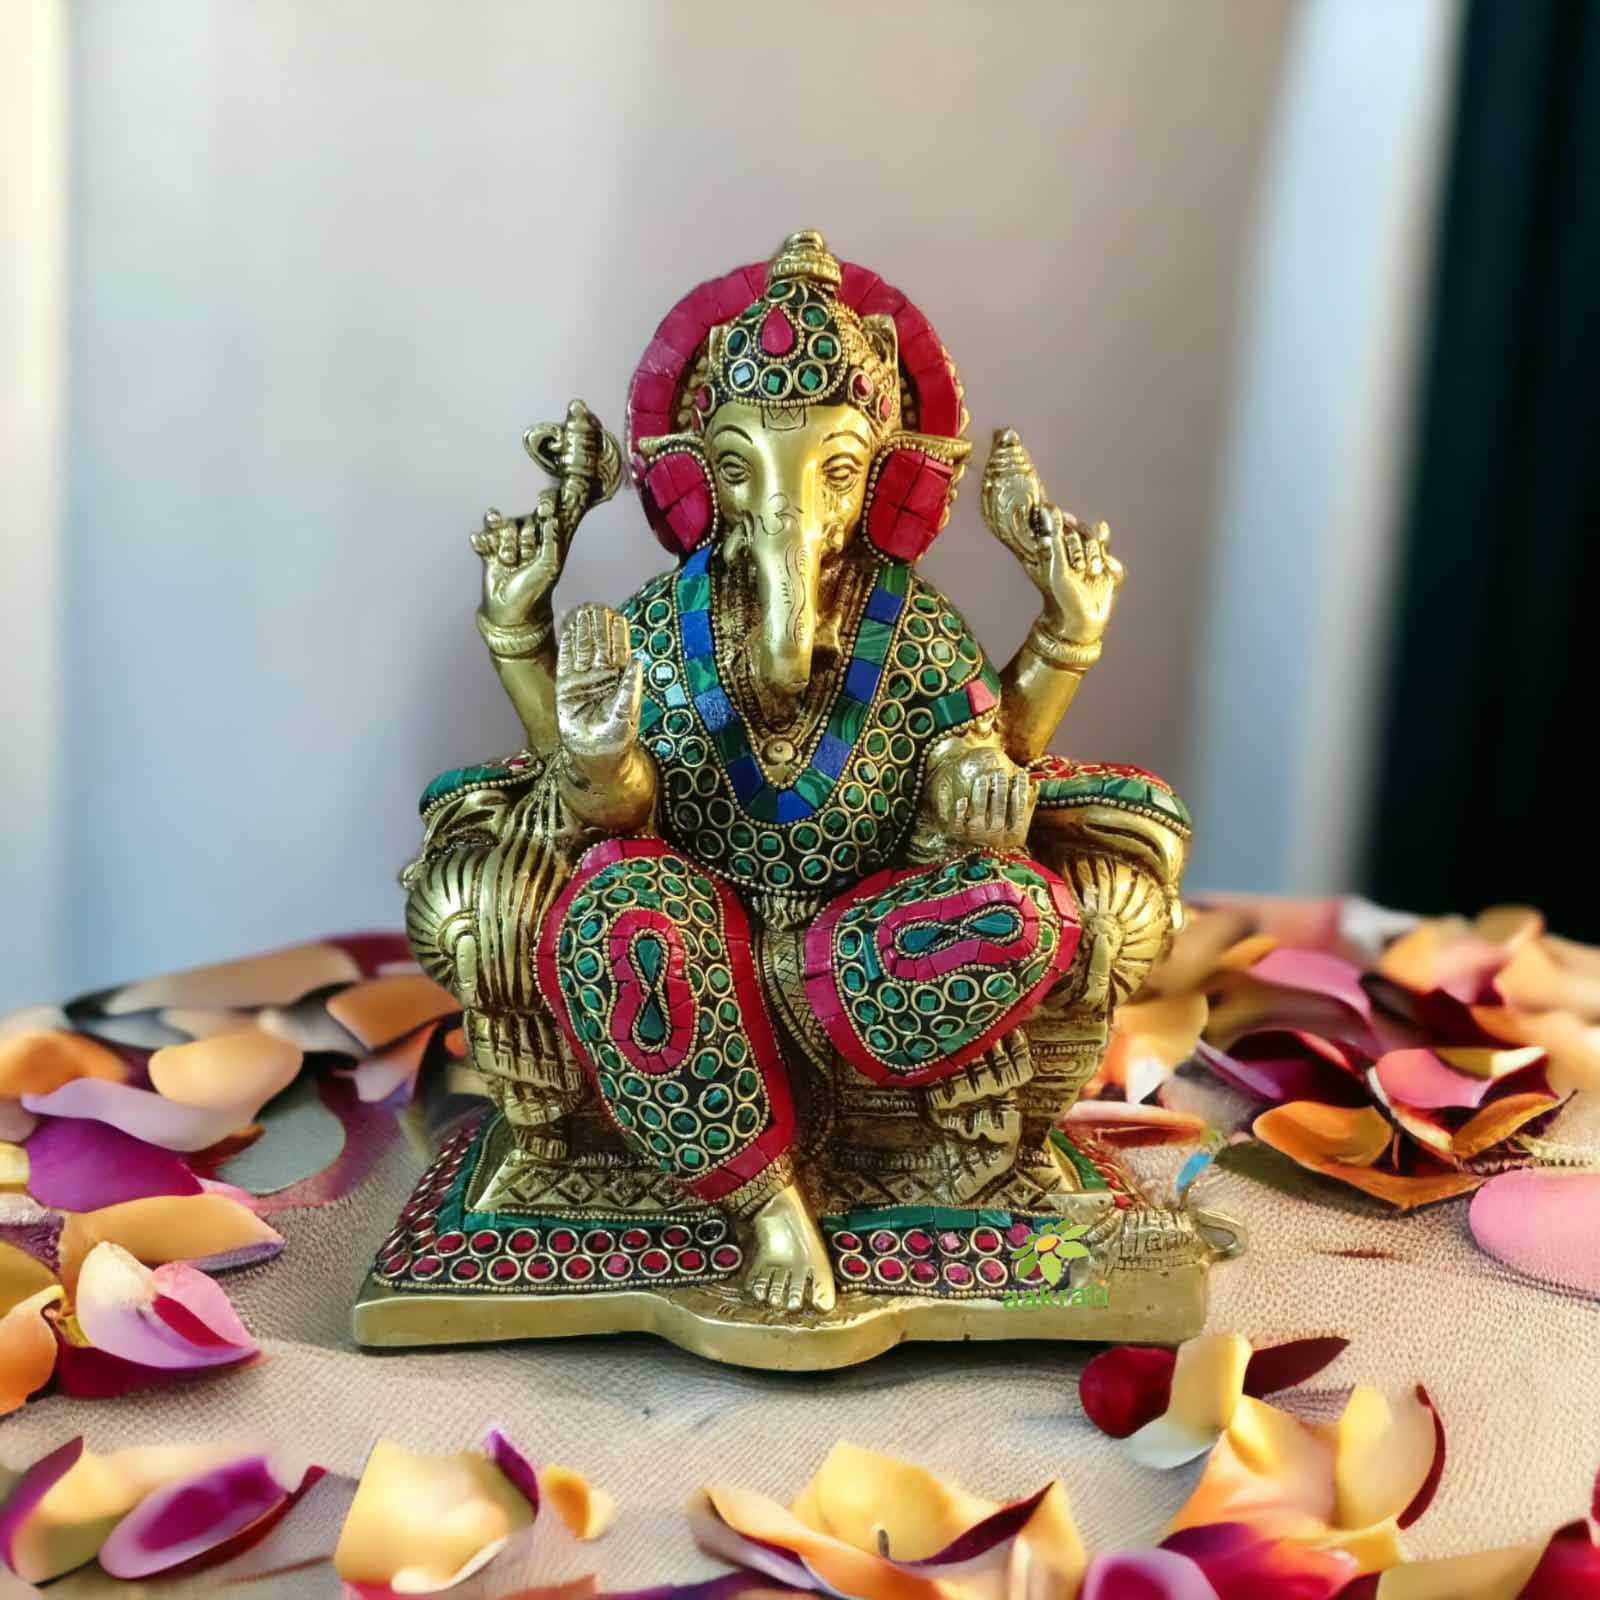 Brass Ganesha Statue For Home Decor With Stone Work Hindu God Ganesh Idol  Ganpati Murti Showpiece God Figurine Gift Brass Handicraft (Height -14.5  Cm) in Thrissur at best price by Breeze Handicrafts -